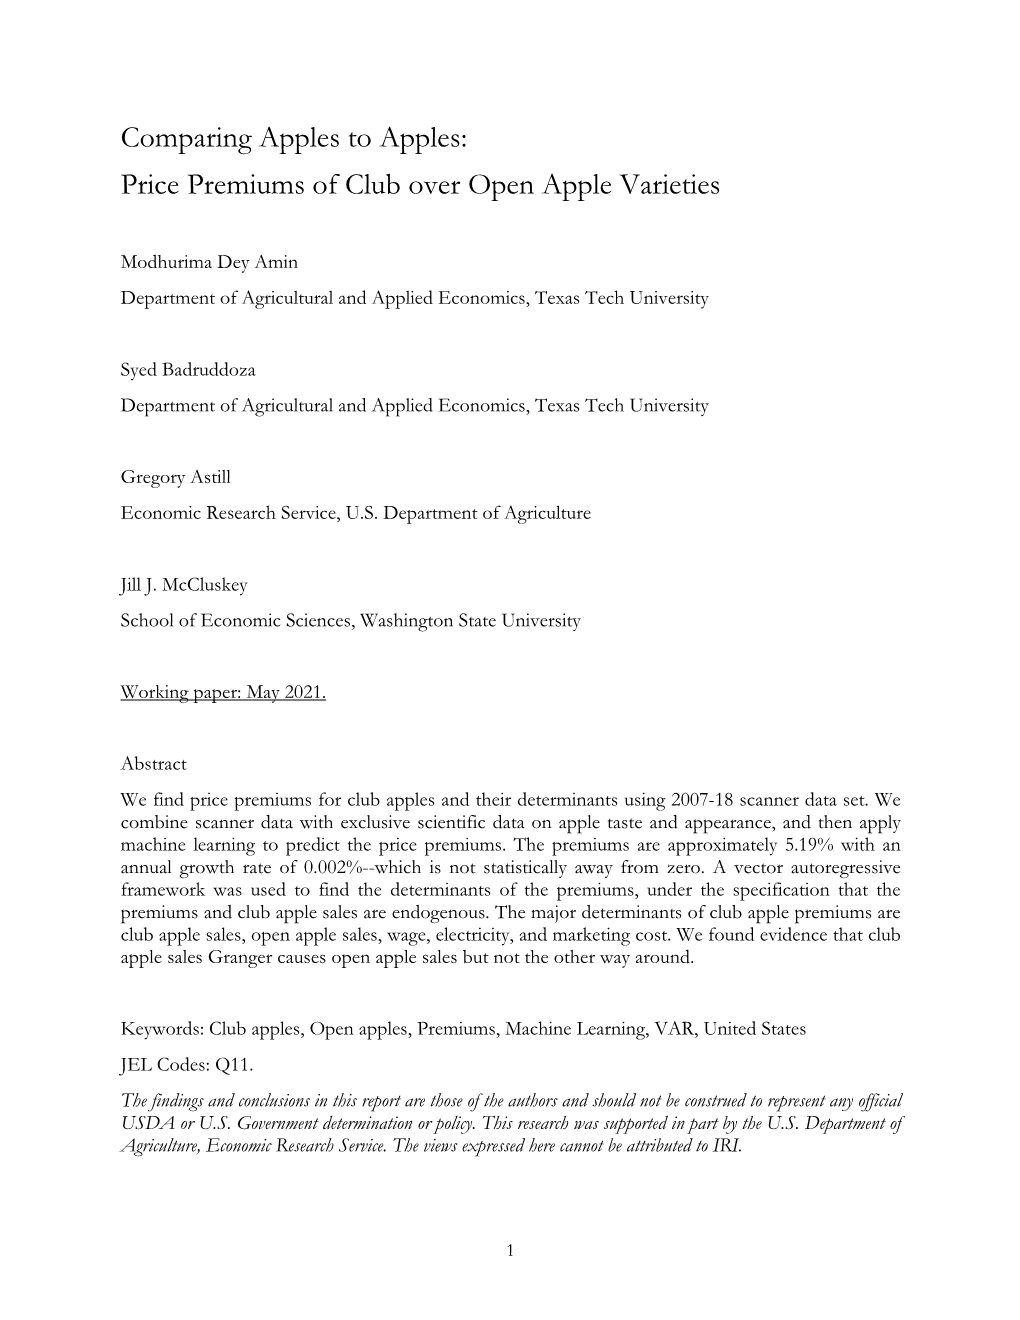 Price Premiums of Club Over Open Apple Varieties